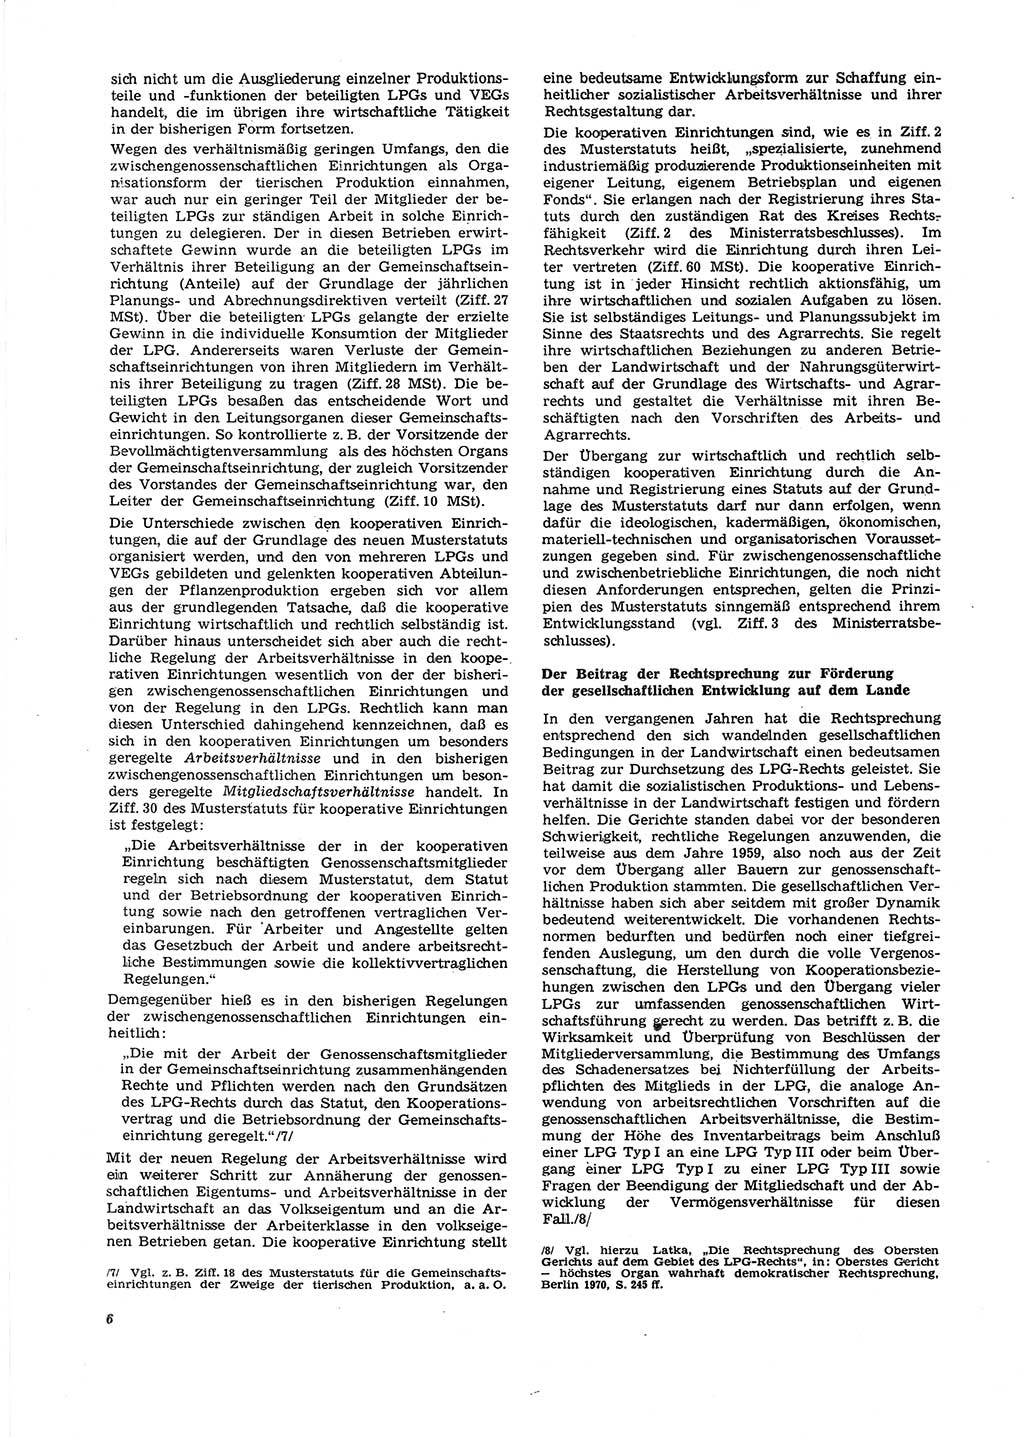 Neue Justiz (NJ), Zeitschrift für Recht und Rechtswissenschaft [Deutsche Demokratische Republik (DDR)], 27. Jahrgang 1973, Seite 6 (NJ DDR 1973, S. 6)